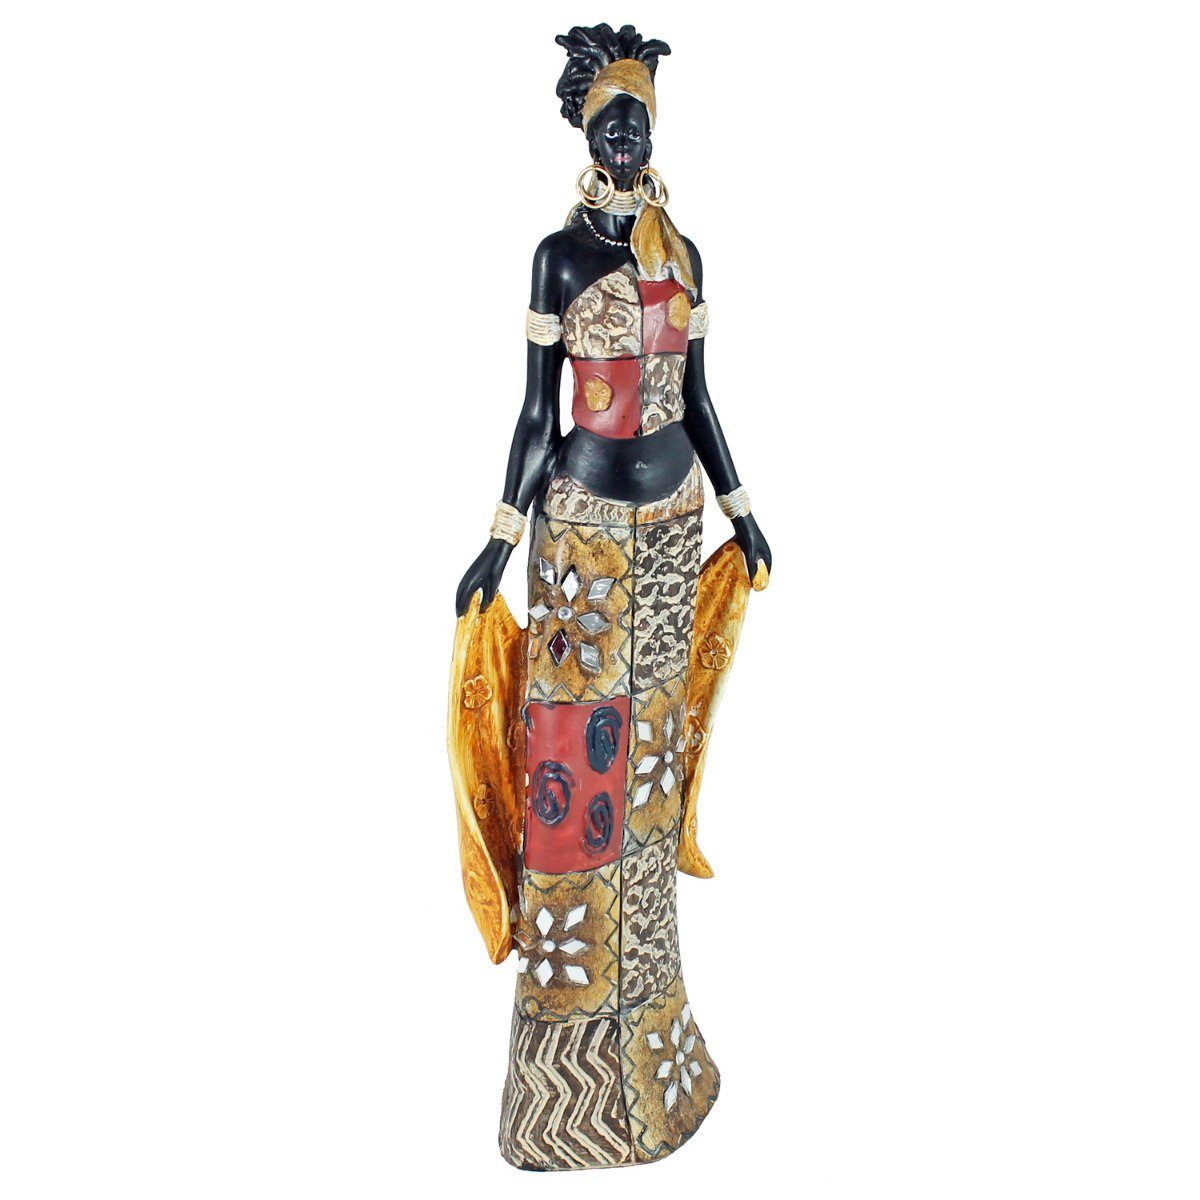 Frau Afrikafigur handbemalt mit Deko colourliving einem Kleid in Afrika Tuch, bunten Figur